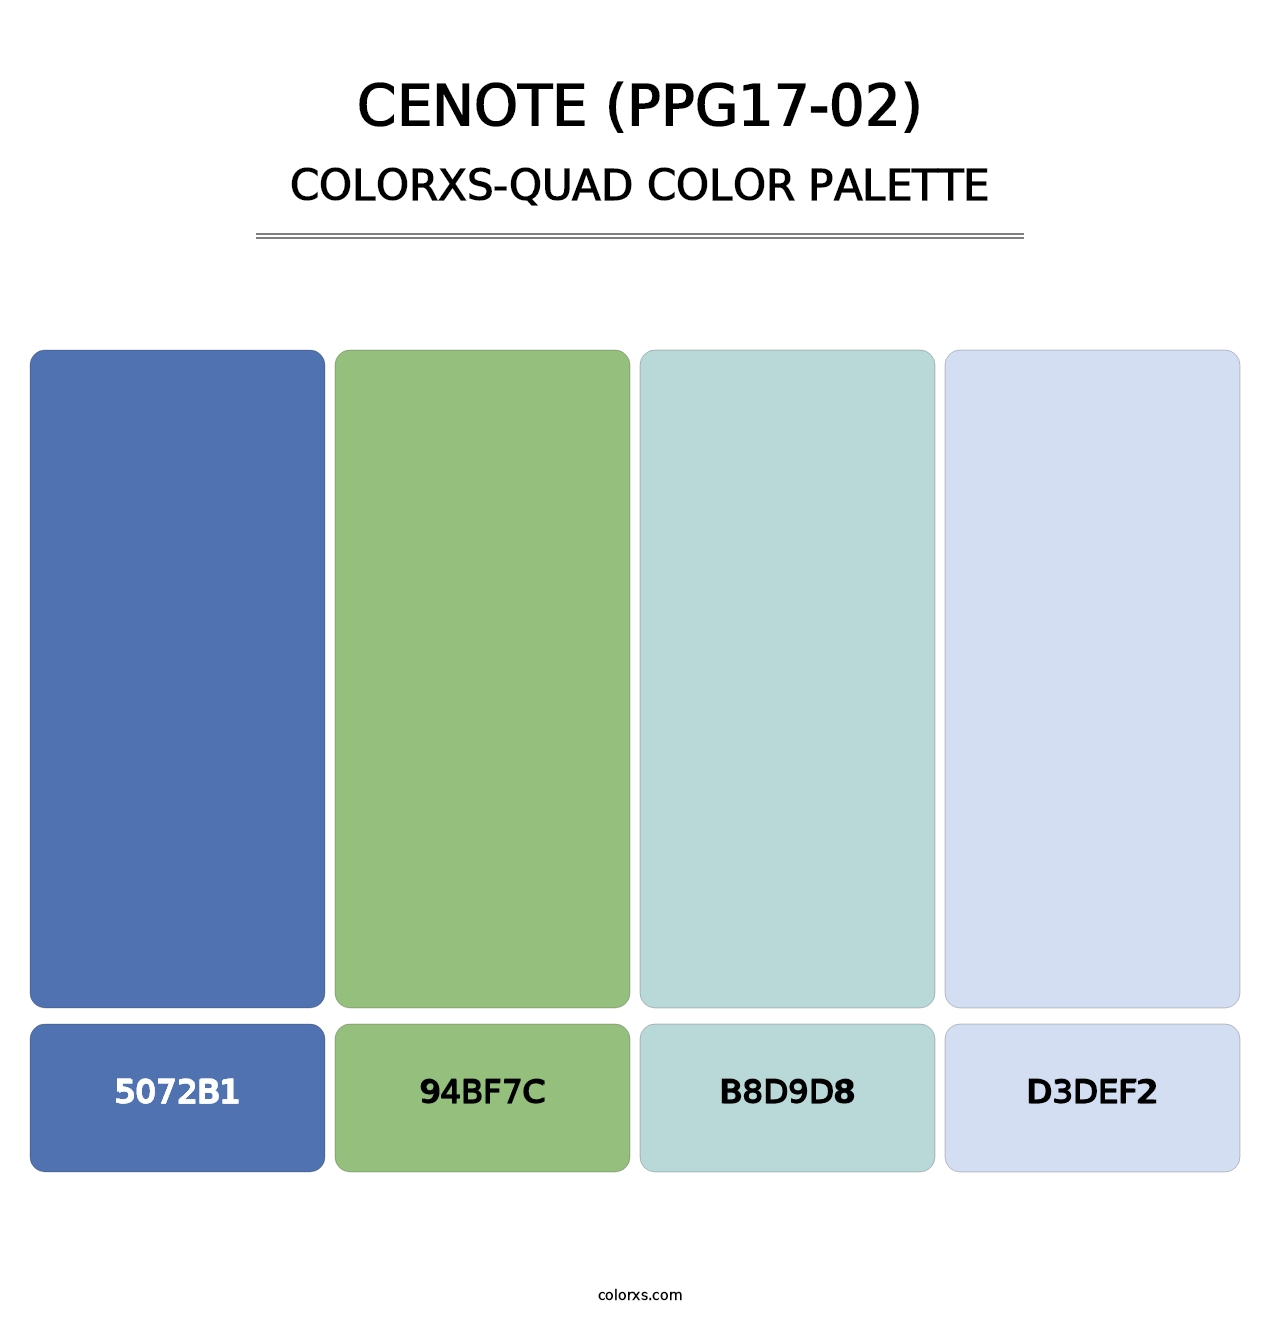 Cenote (PPG17-02) - Colorxs Quad Palette